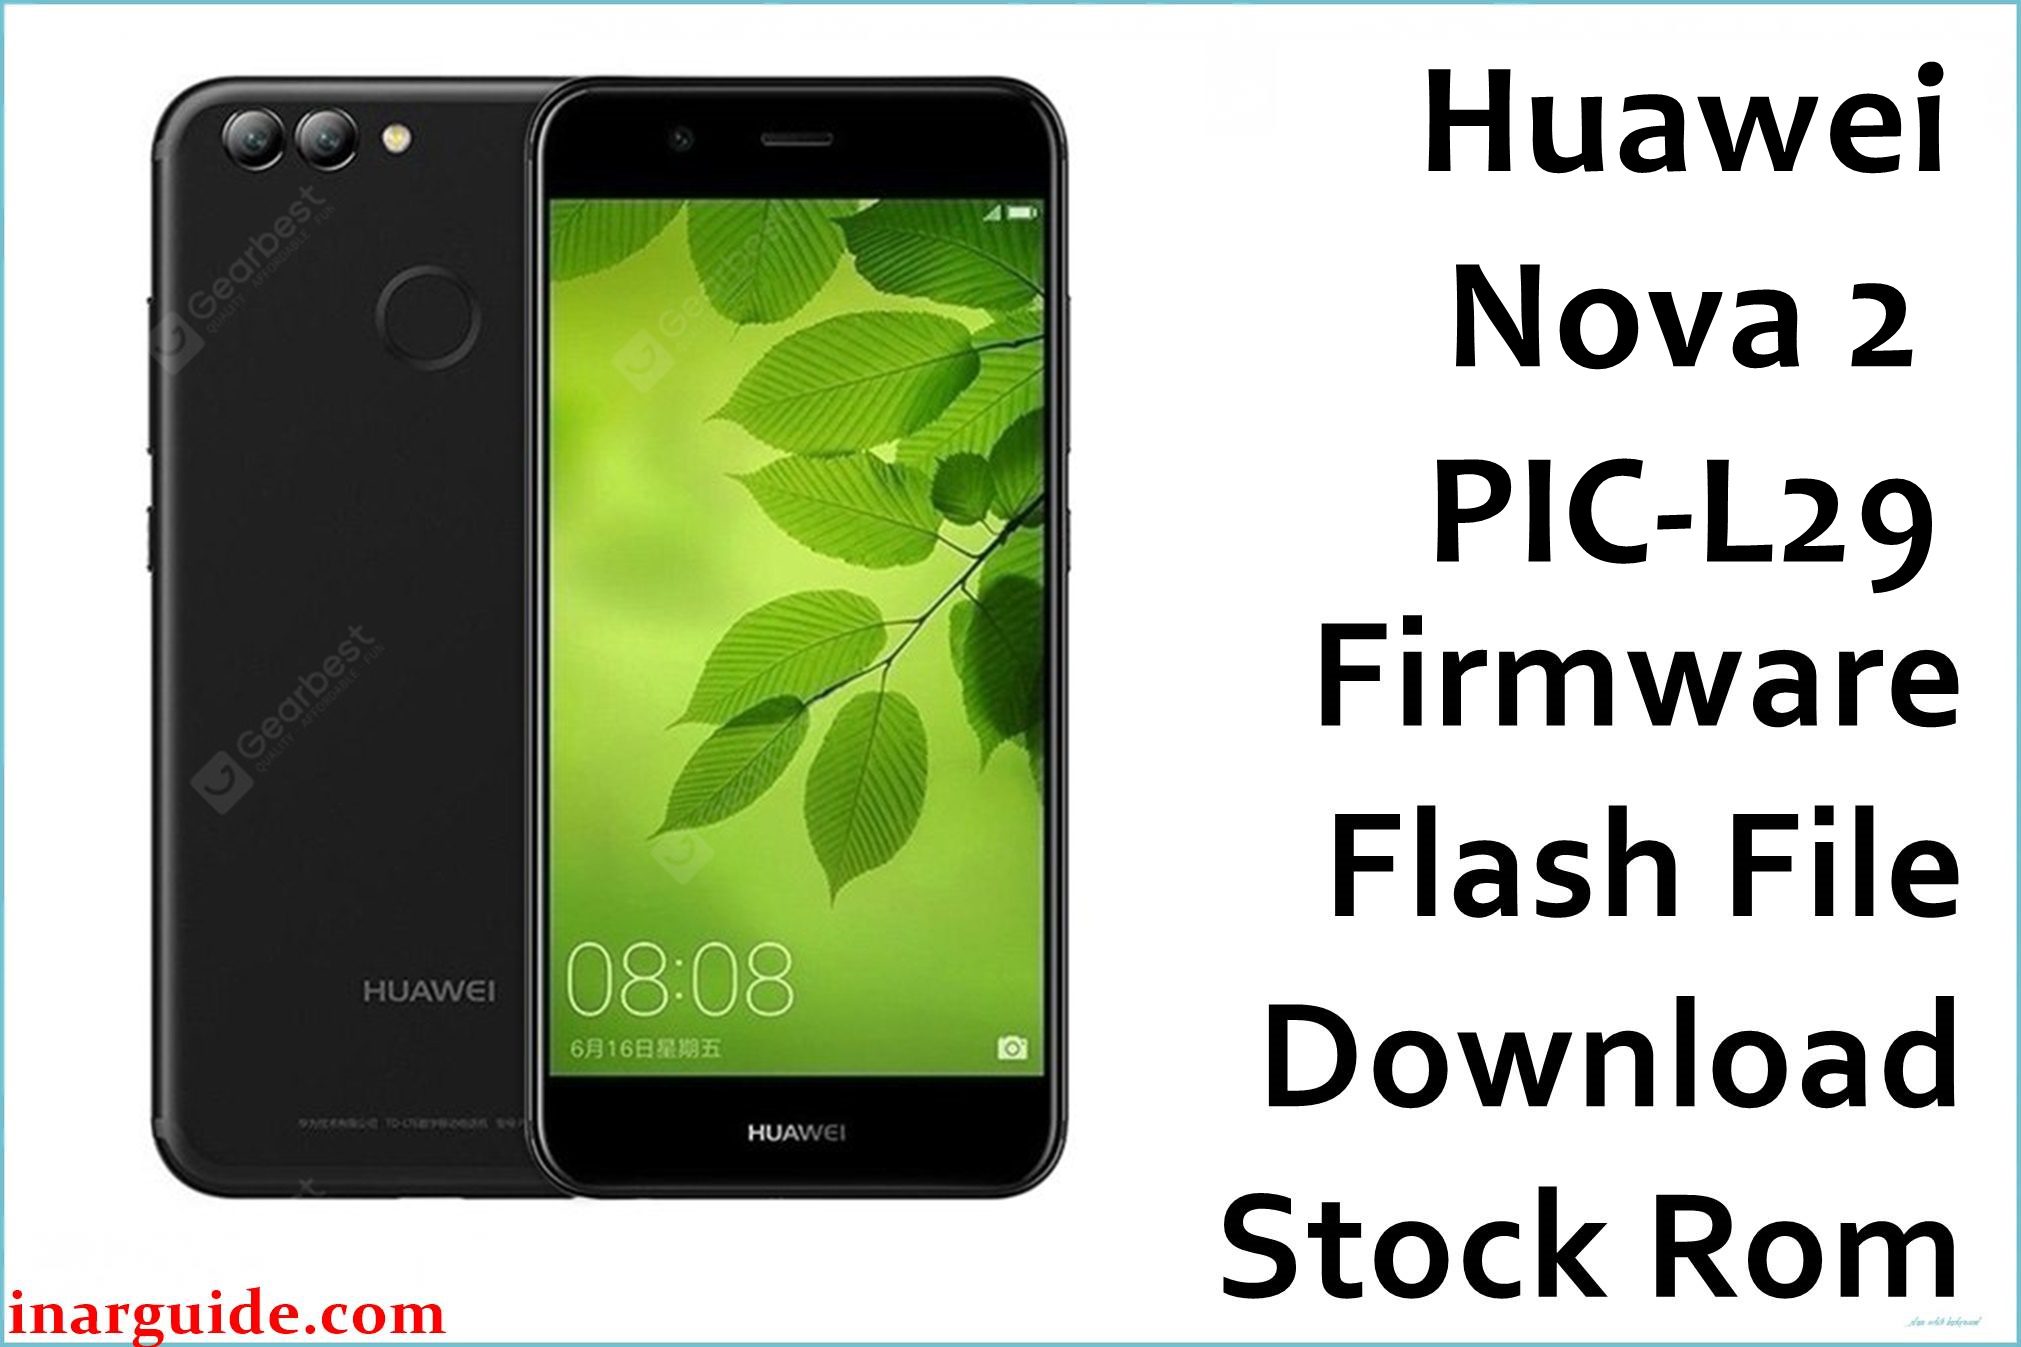 Huawei Nova 2 PIC L29